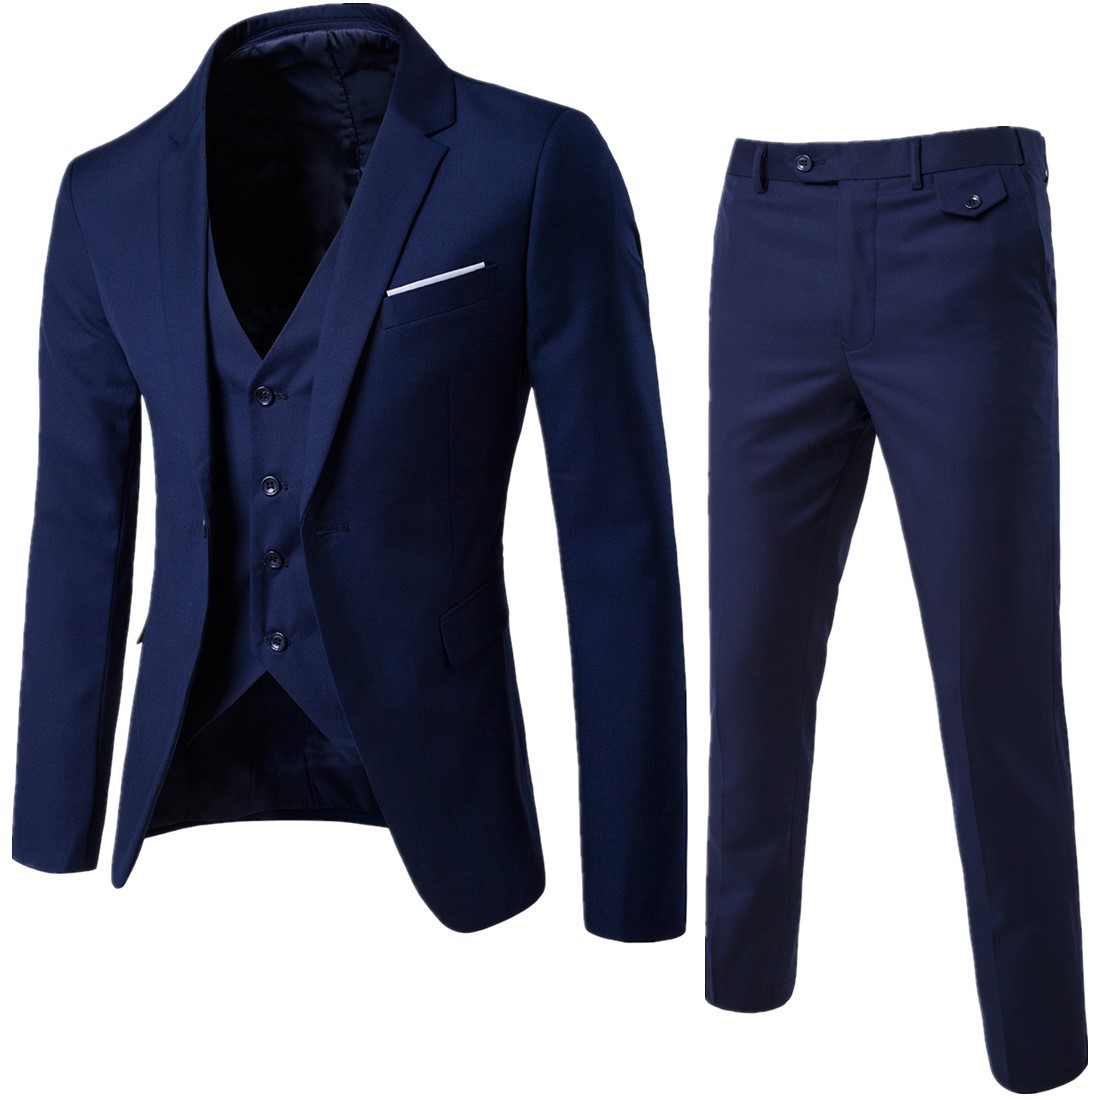 2019 foreign trade new men's two piece suit eBay Korean version men's slim suit factory enough